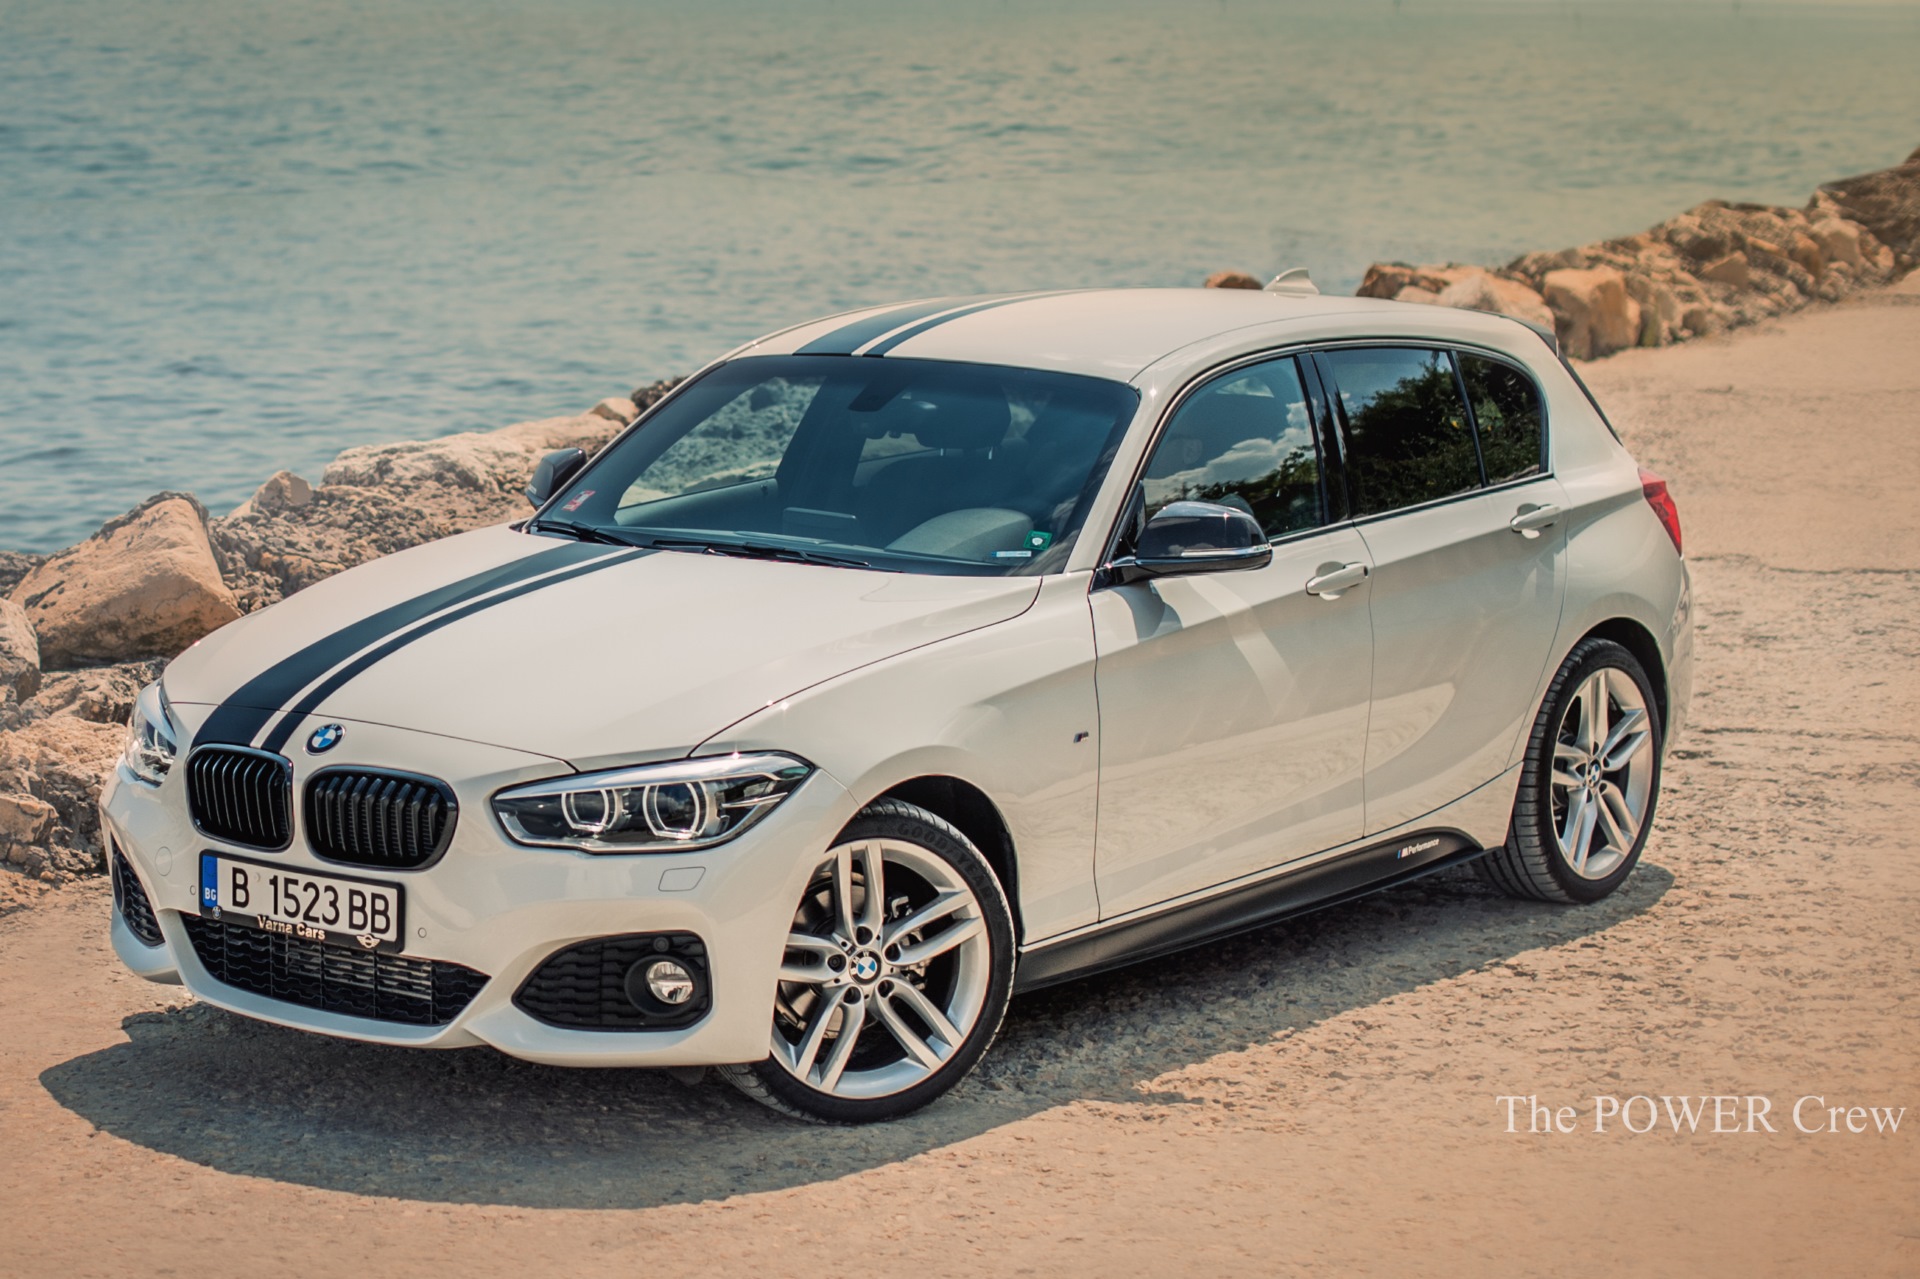 https://cdn.bimmertoday.de/wp-content/uploads/2015/08/BMW-M-Performance-Tuning-BMW-1er-F20-LCI-Facelift-2015-12.jpg